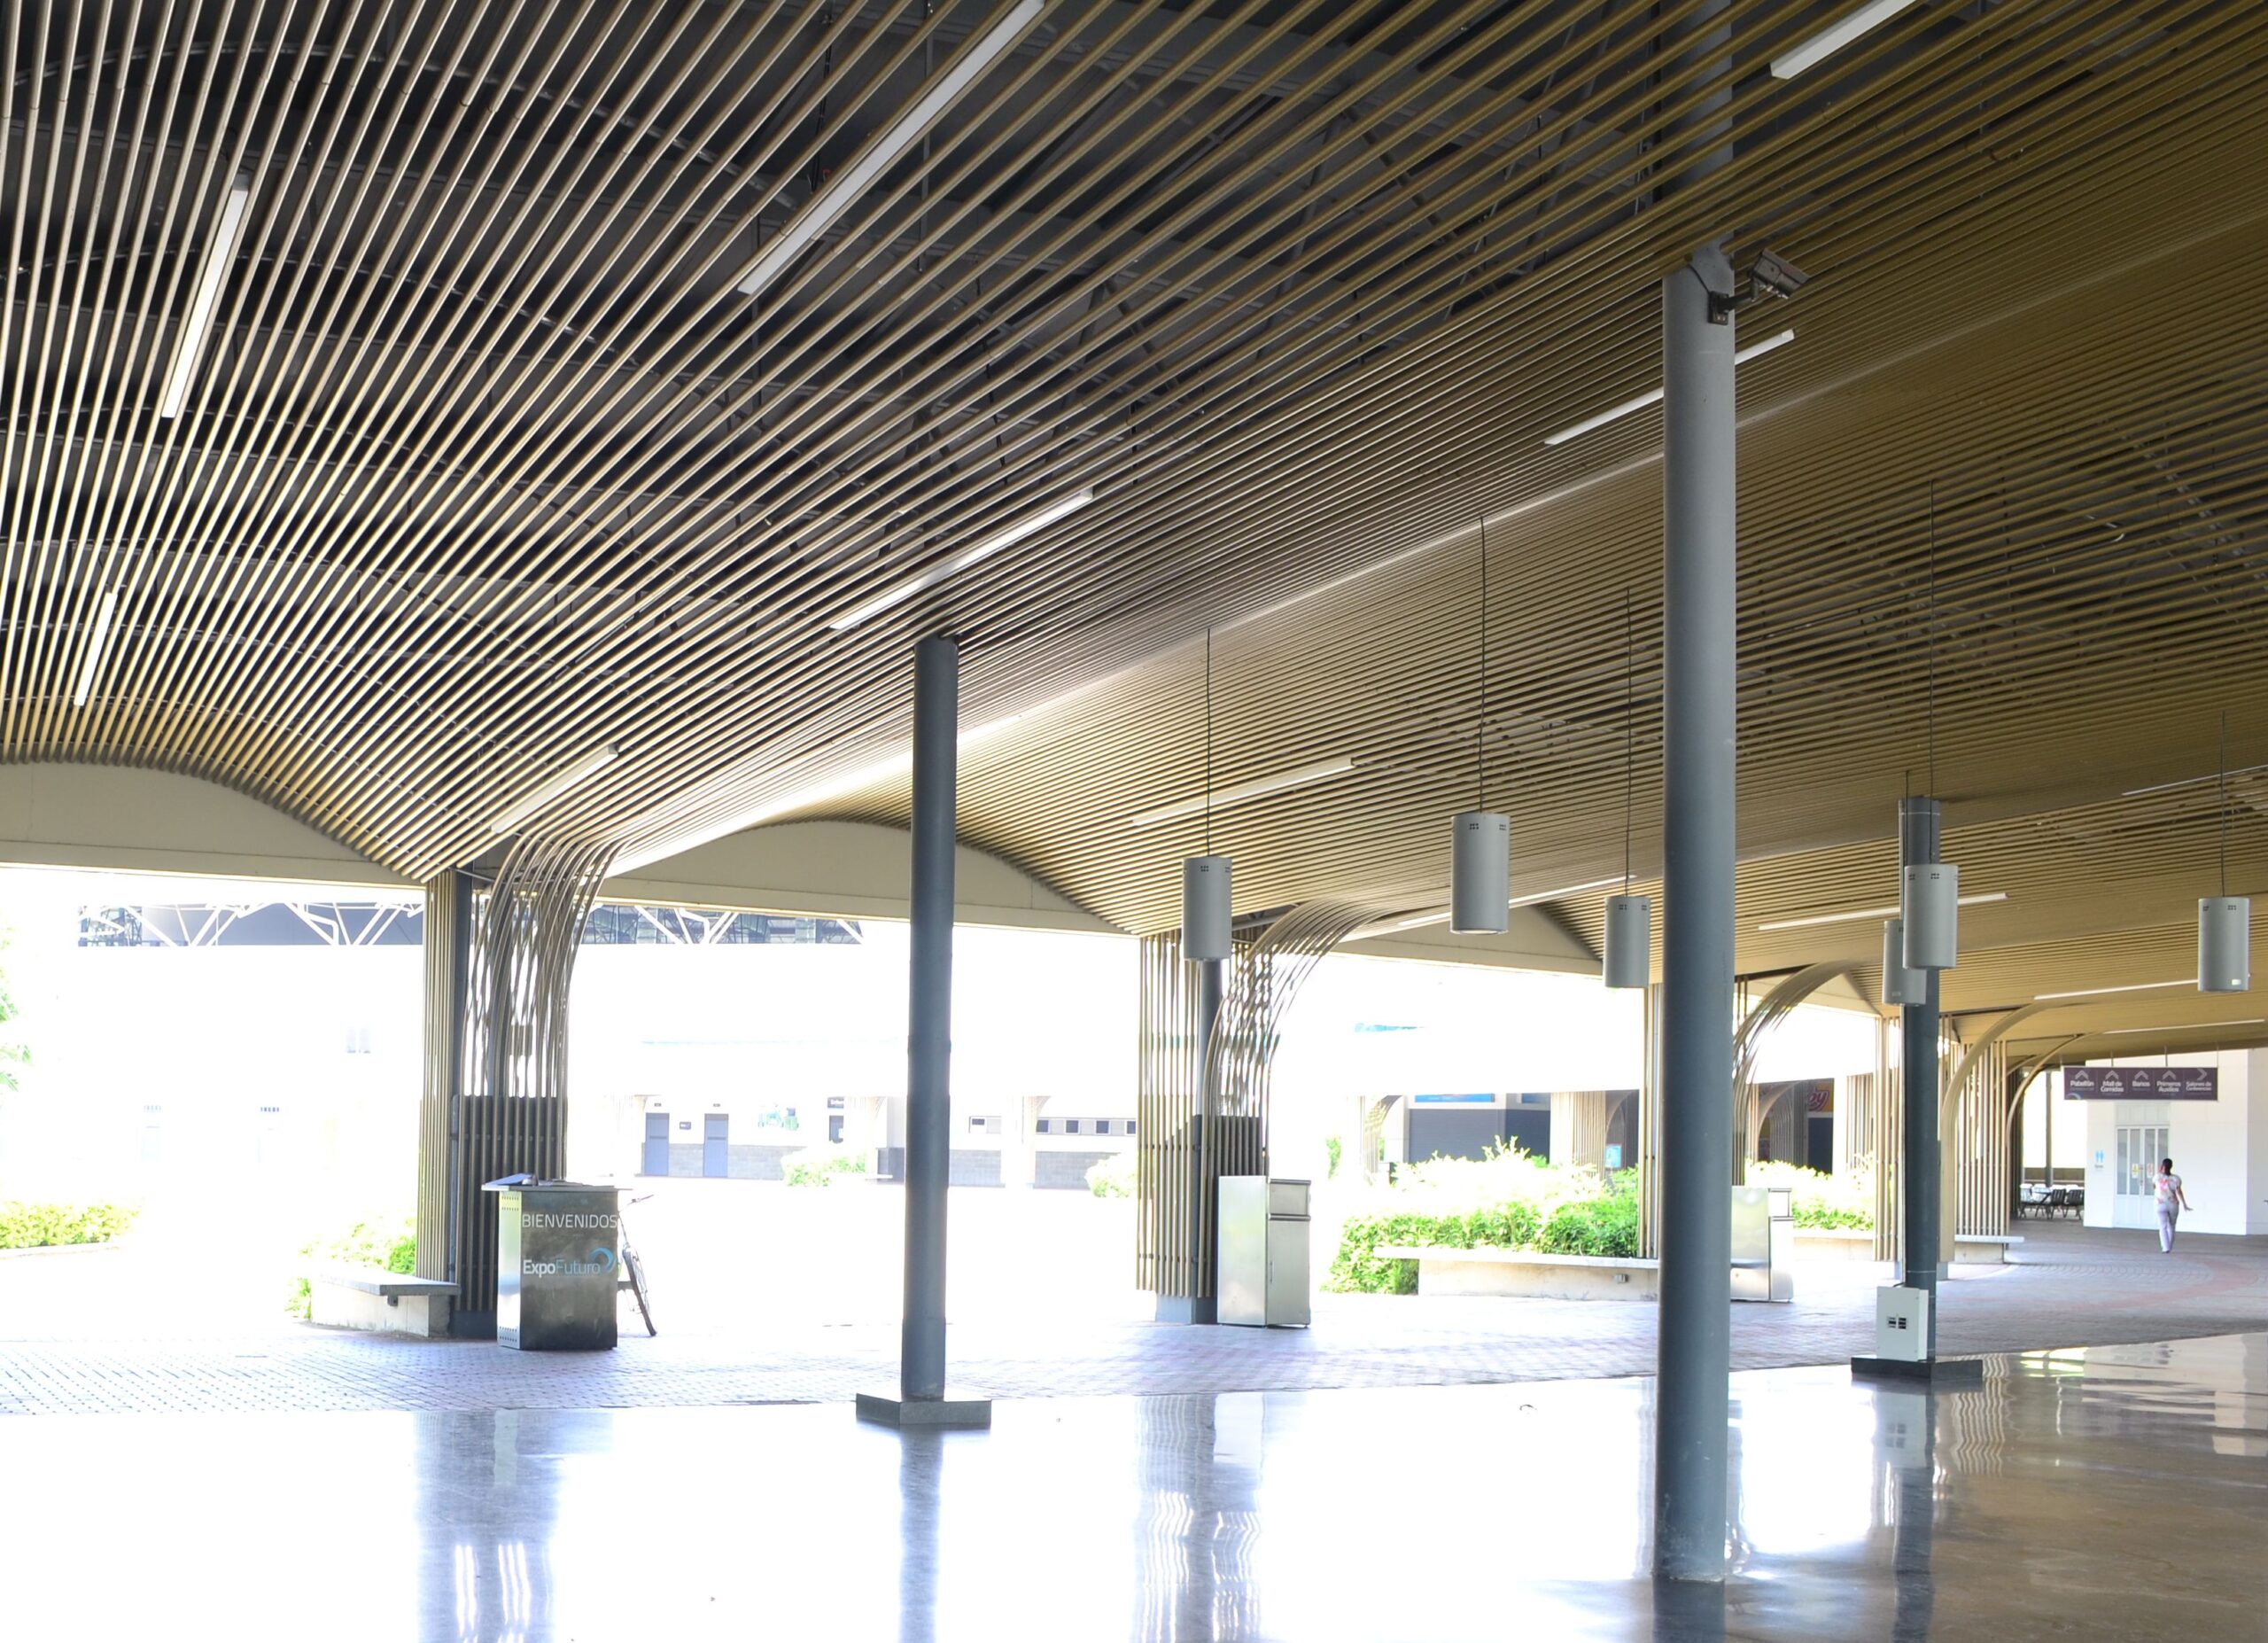 Centro de Convenciones – Expofuturo- Pereira enews imagenes imagen 3780 scaled